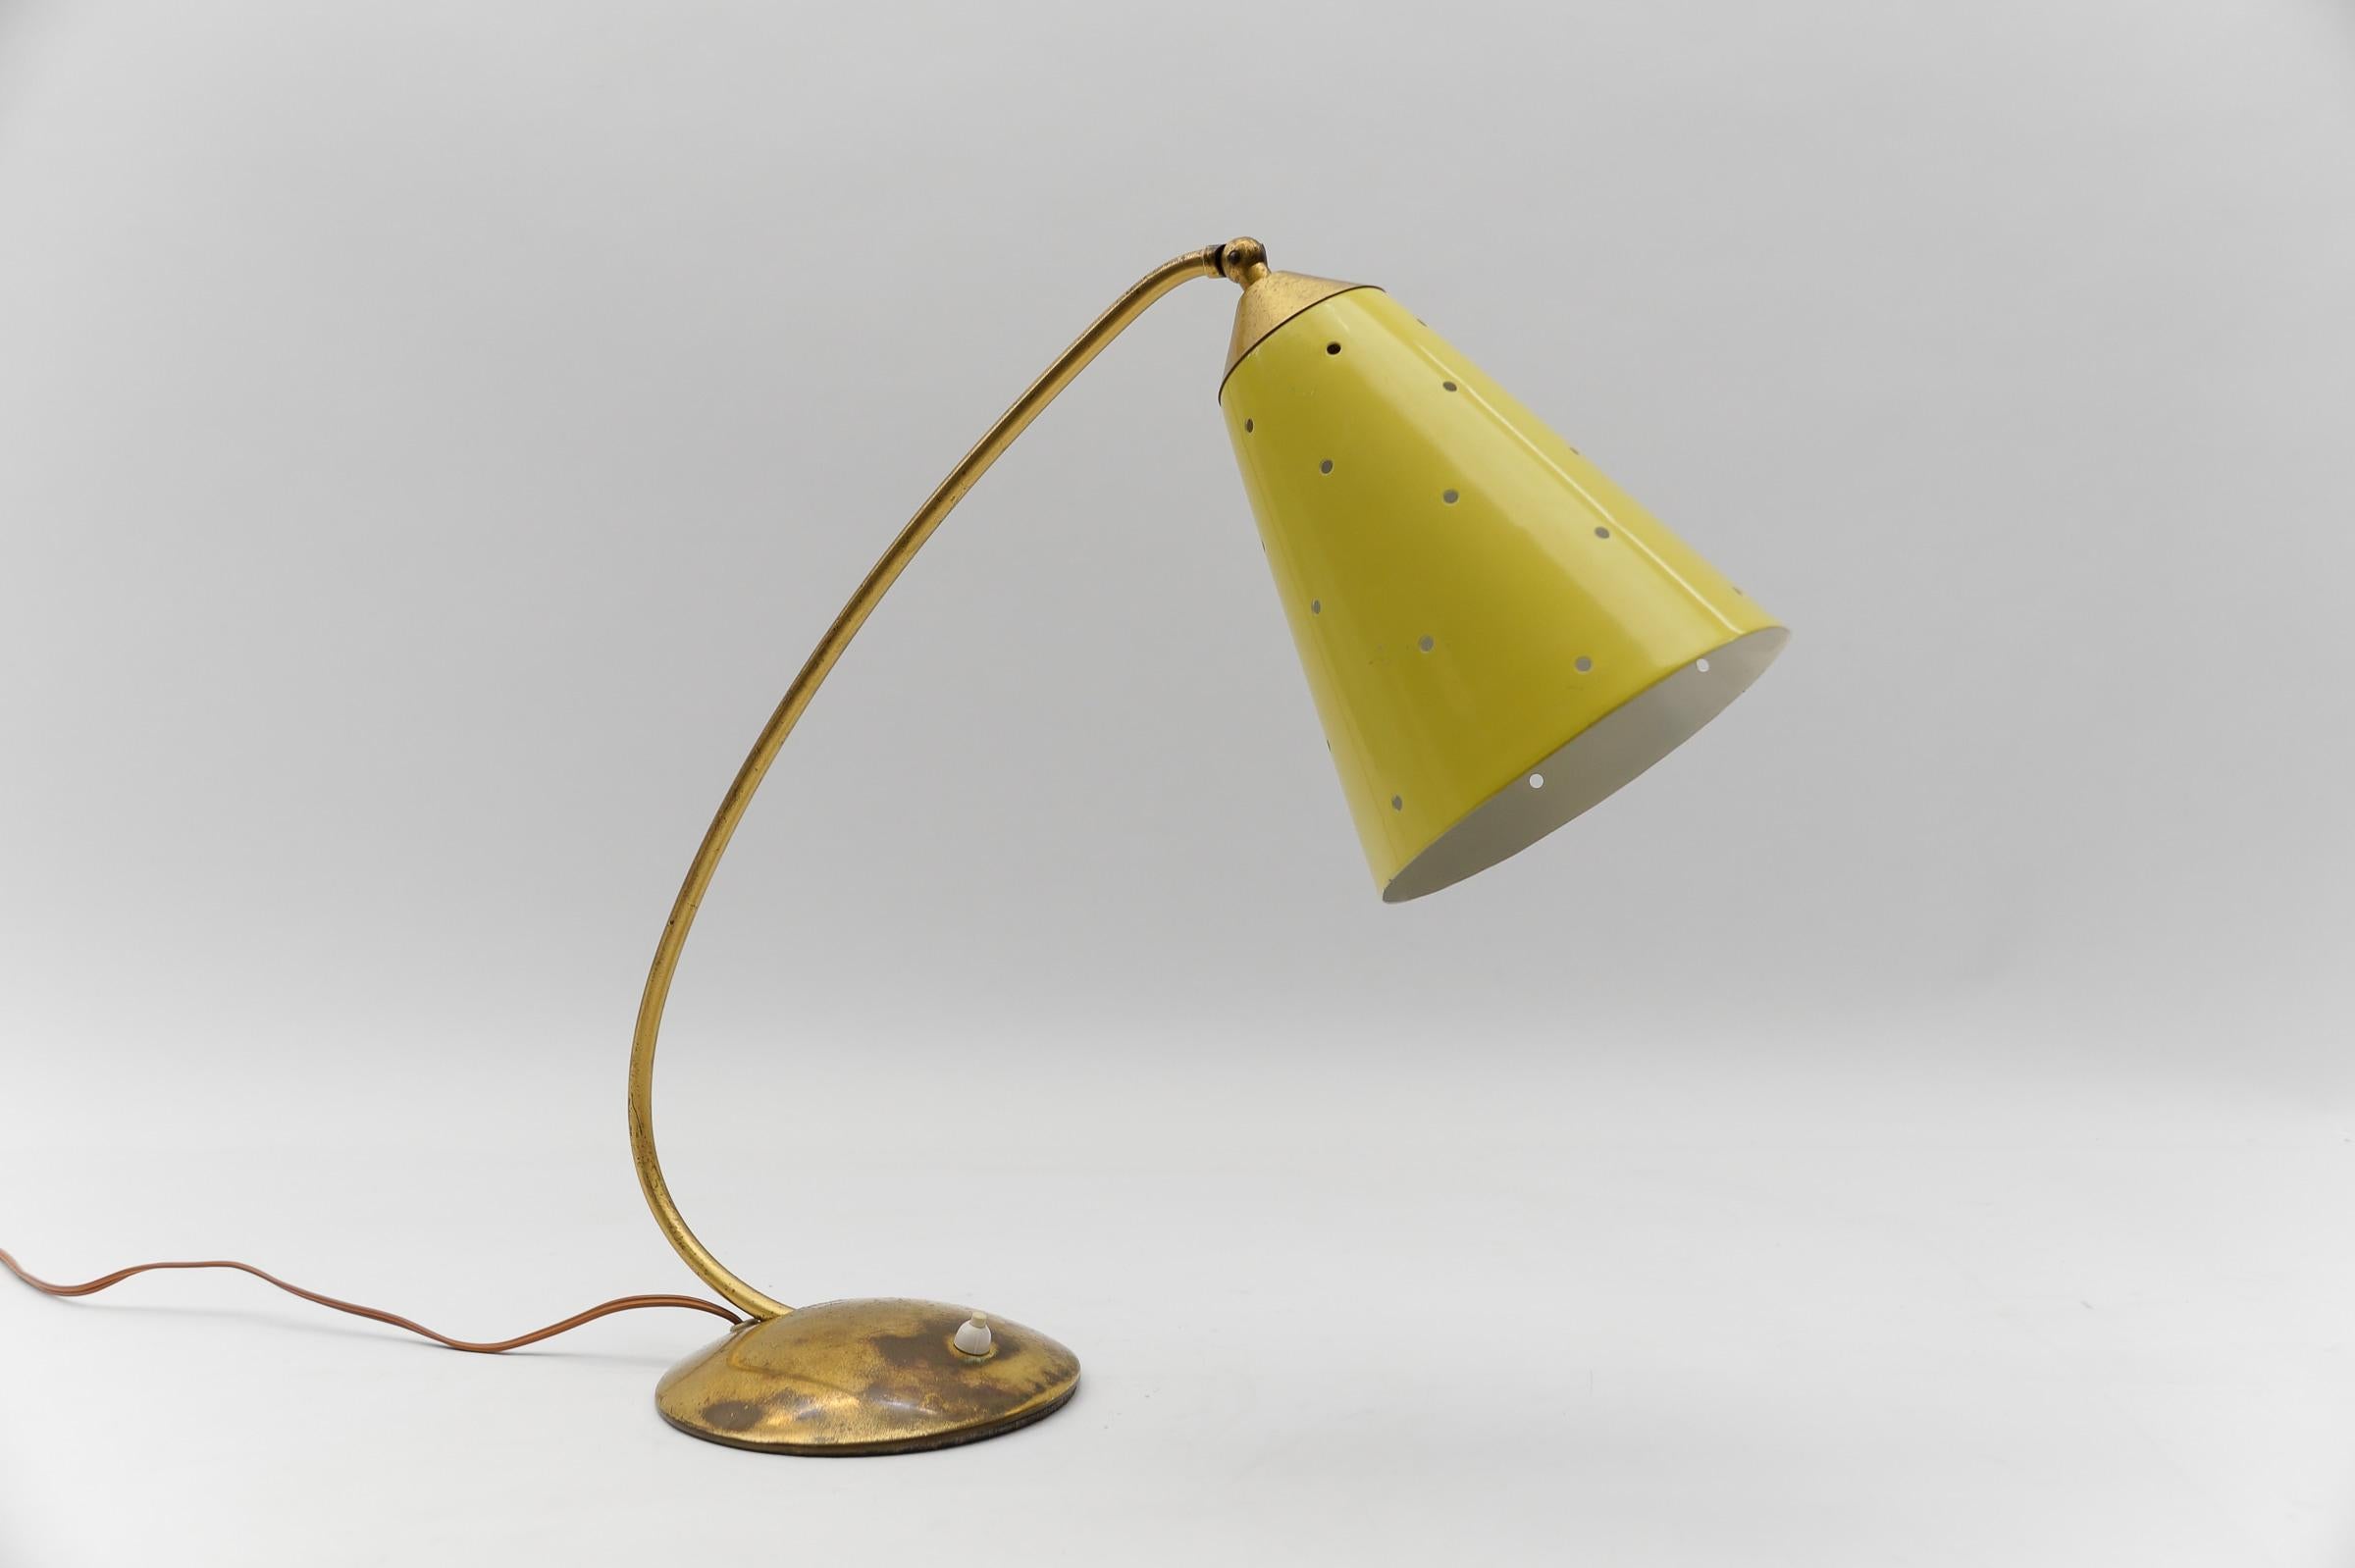 Schöne moderne Tischlampe aus der Mitte des Jahrhunderts, Messing, 1950er Jahre

Die Lampe benötigt 1 x E14 / E15 Edison Schraube fit Glühbirne, ist verkabelt, und in funktionsfähigem Zustand. Er läuft sowohl mit 110 als auch mit 230 Volt.

Sehr